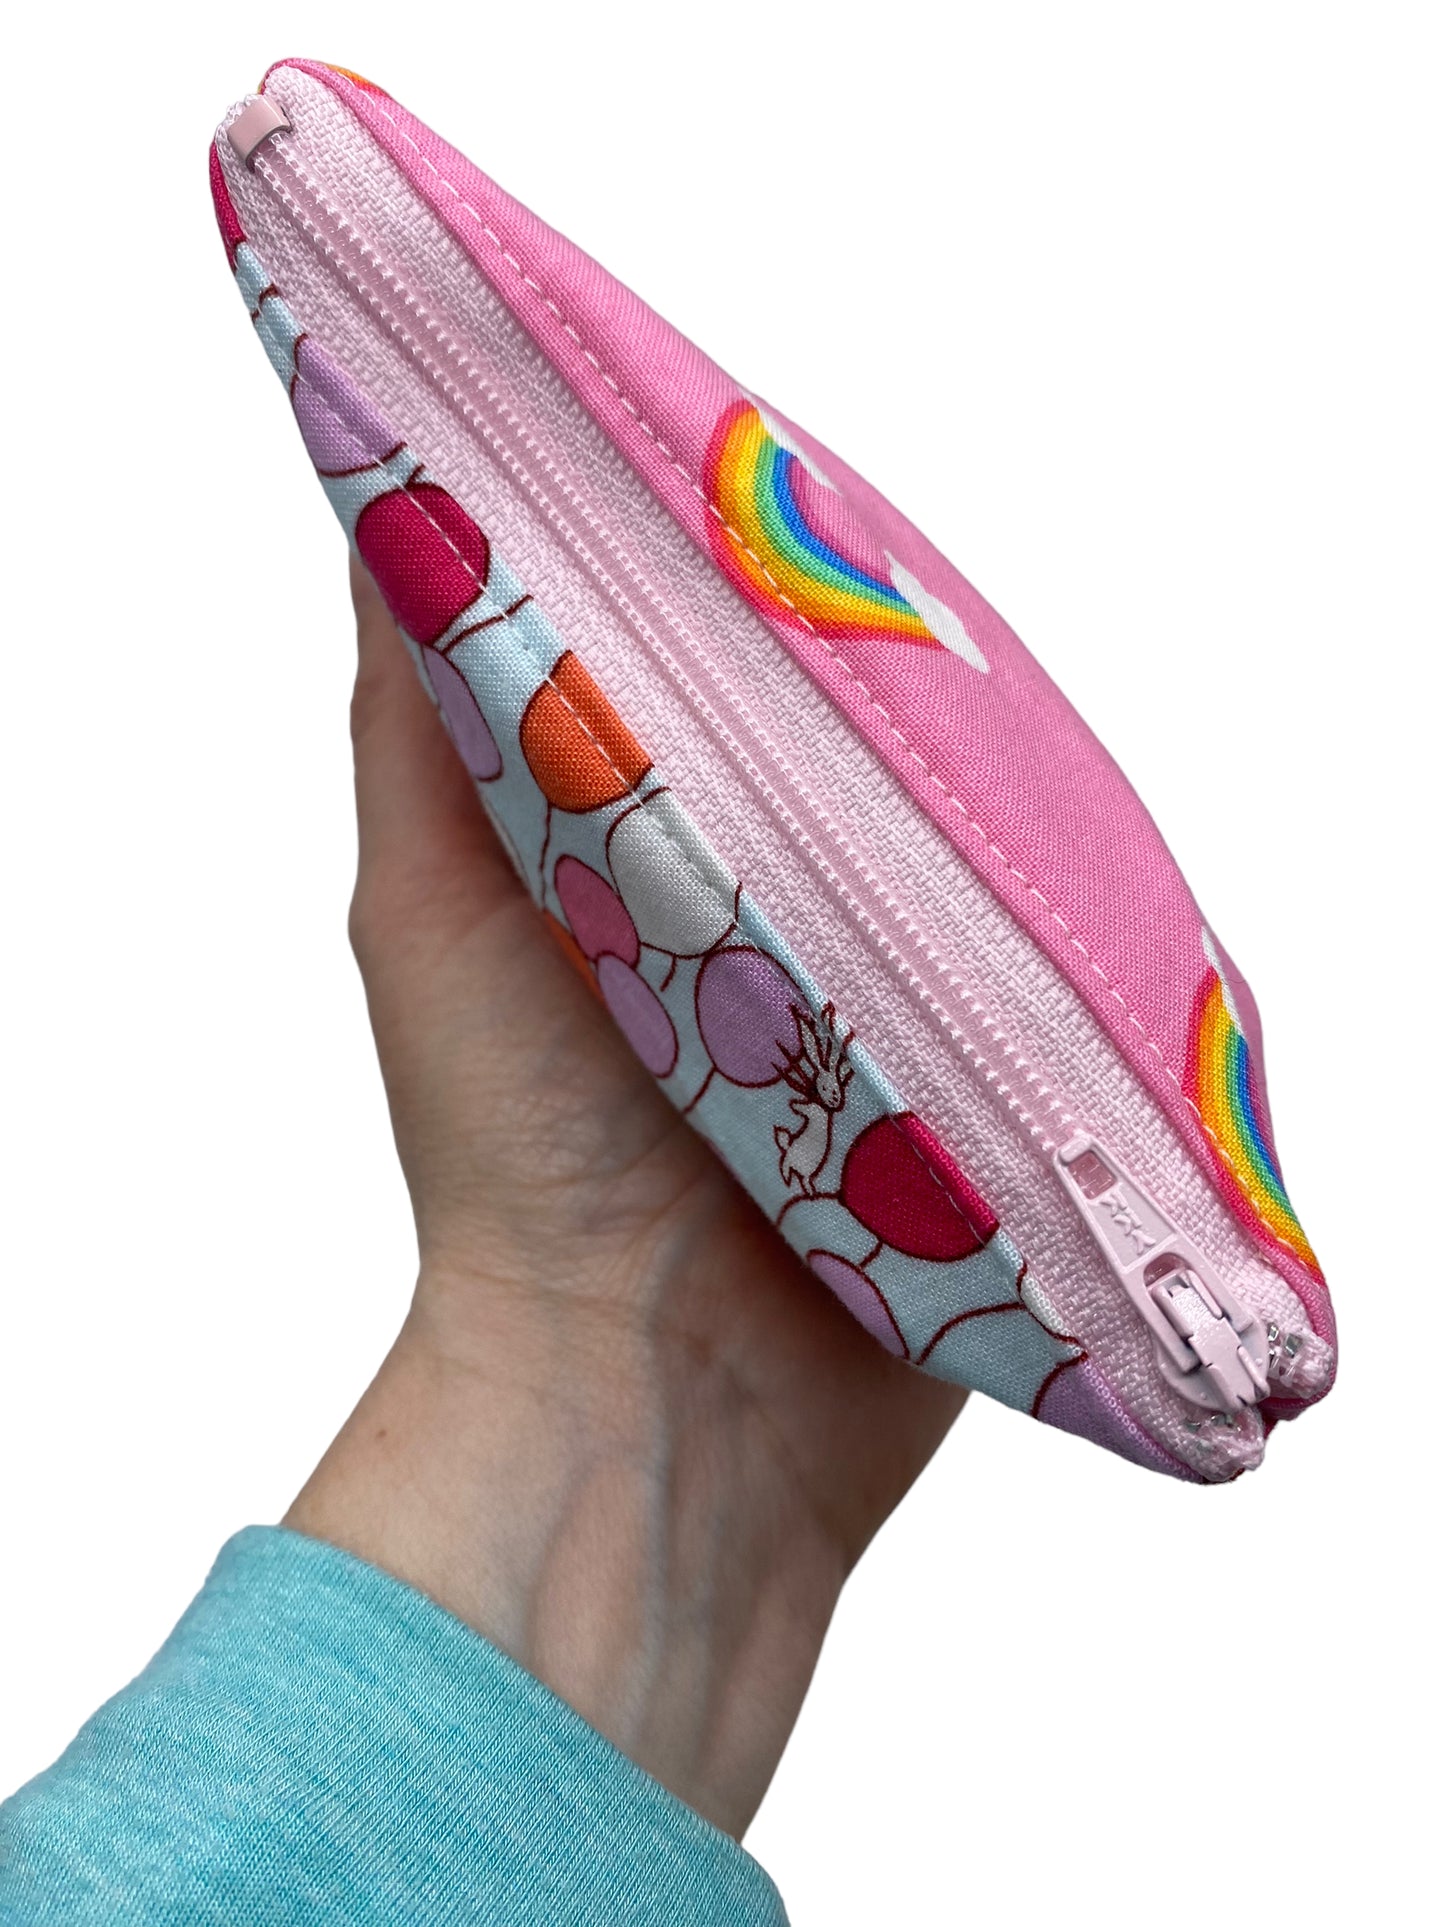 Toddler Sized Reusable Zippered Bag Rainbows Bunnies Balloons Combo Print